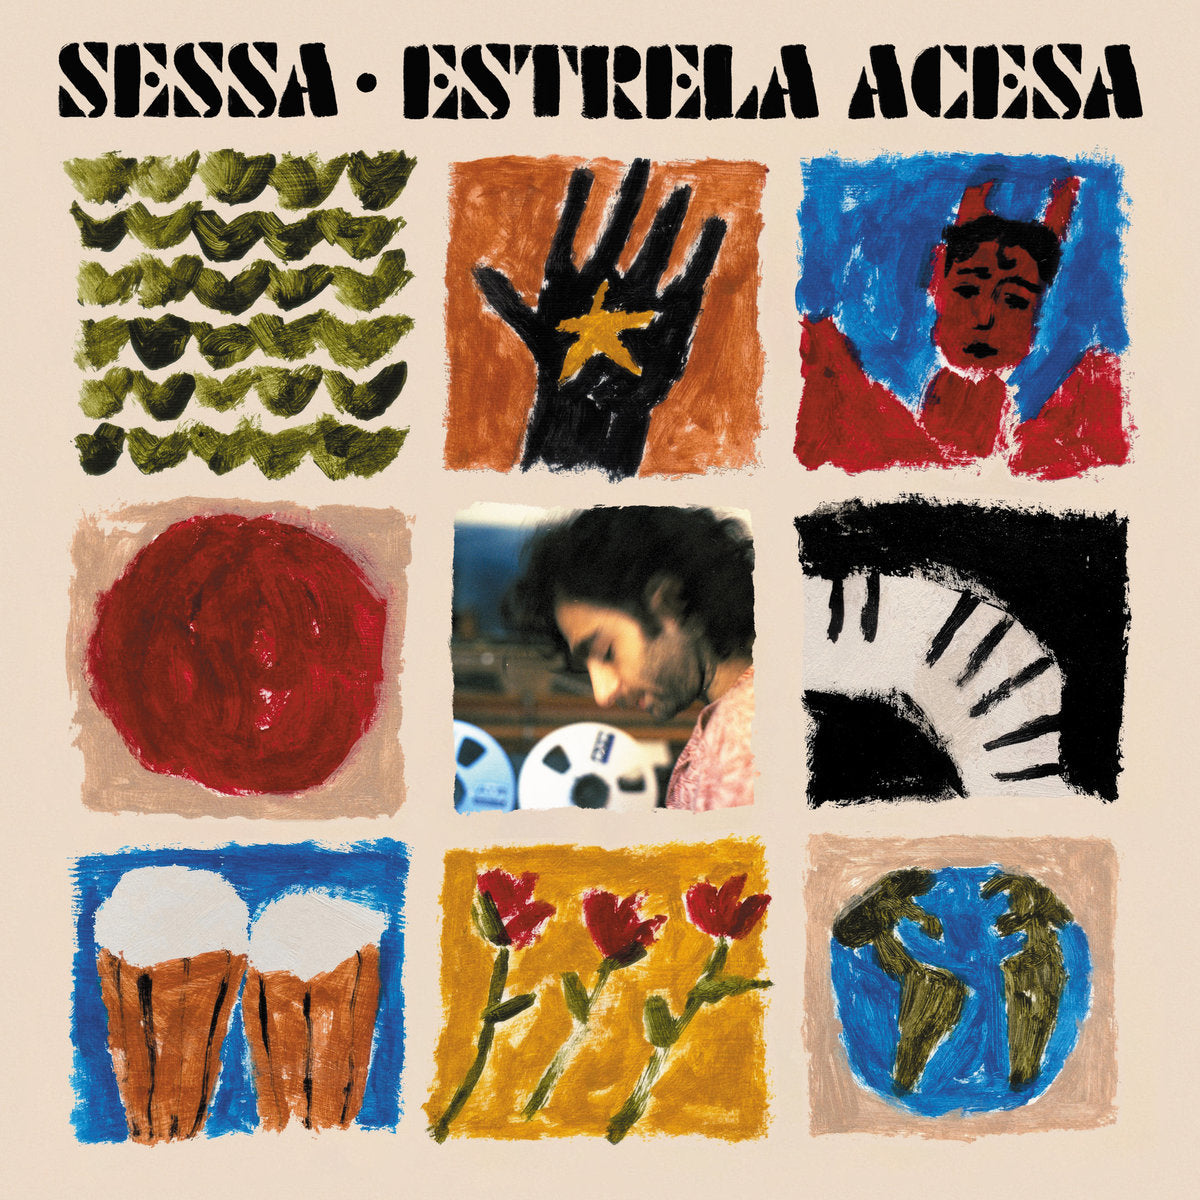 SESSA - ESTRELA ACESA Vinyl LP